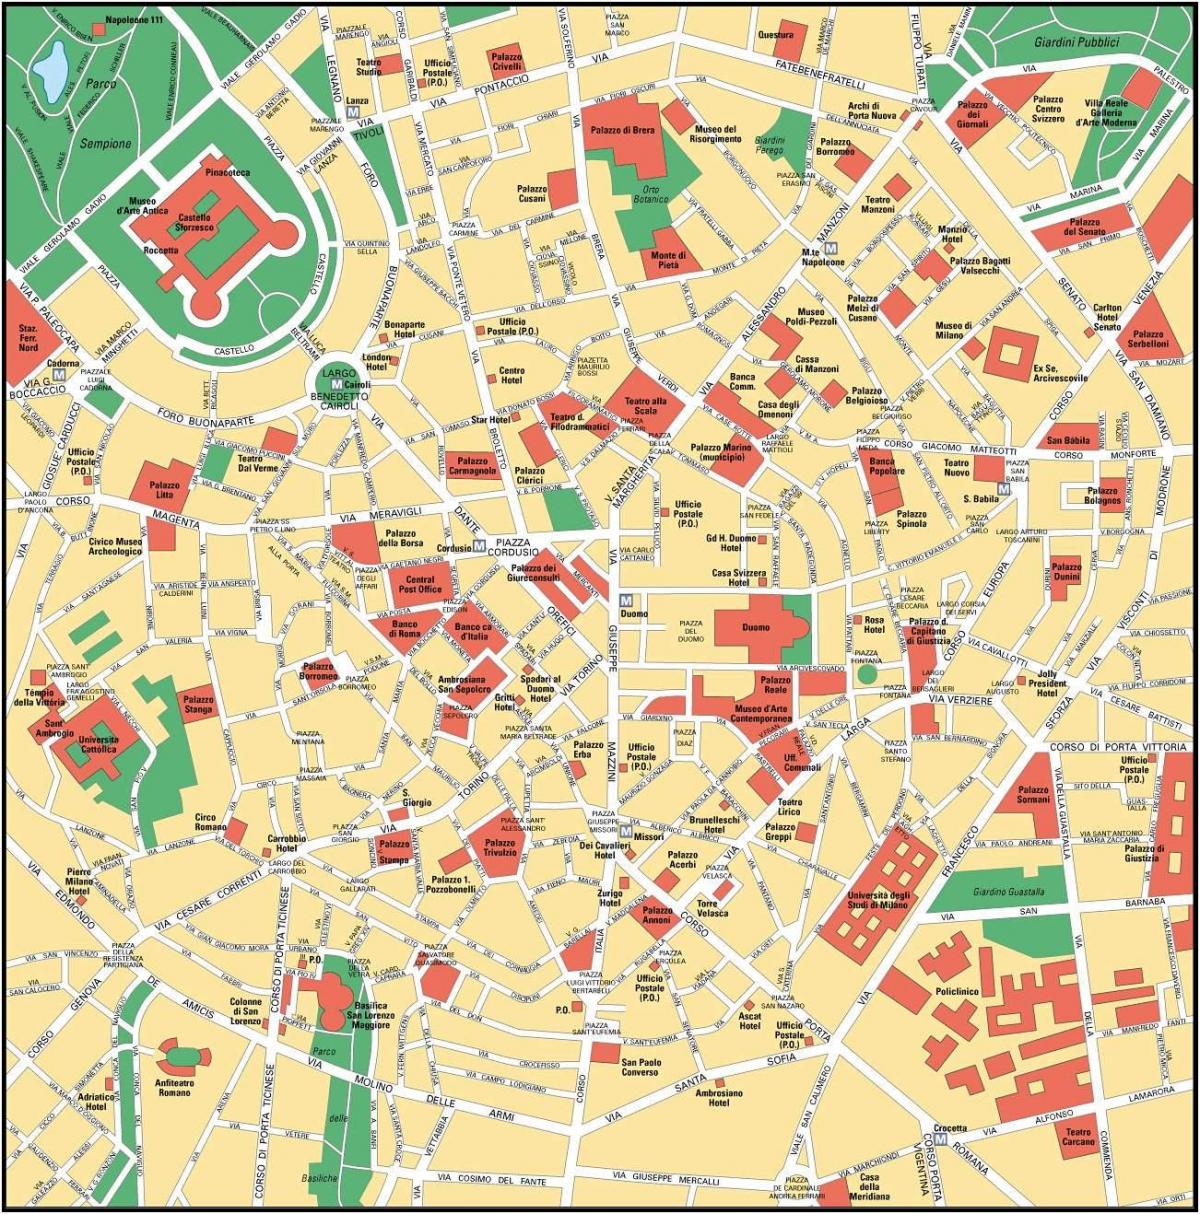 milán, italia el centro de la ciudad mapa